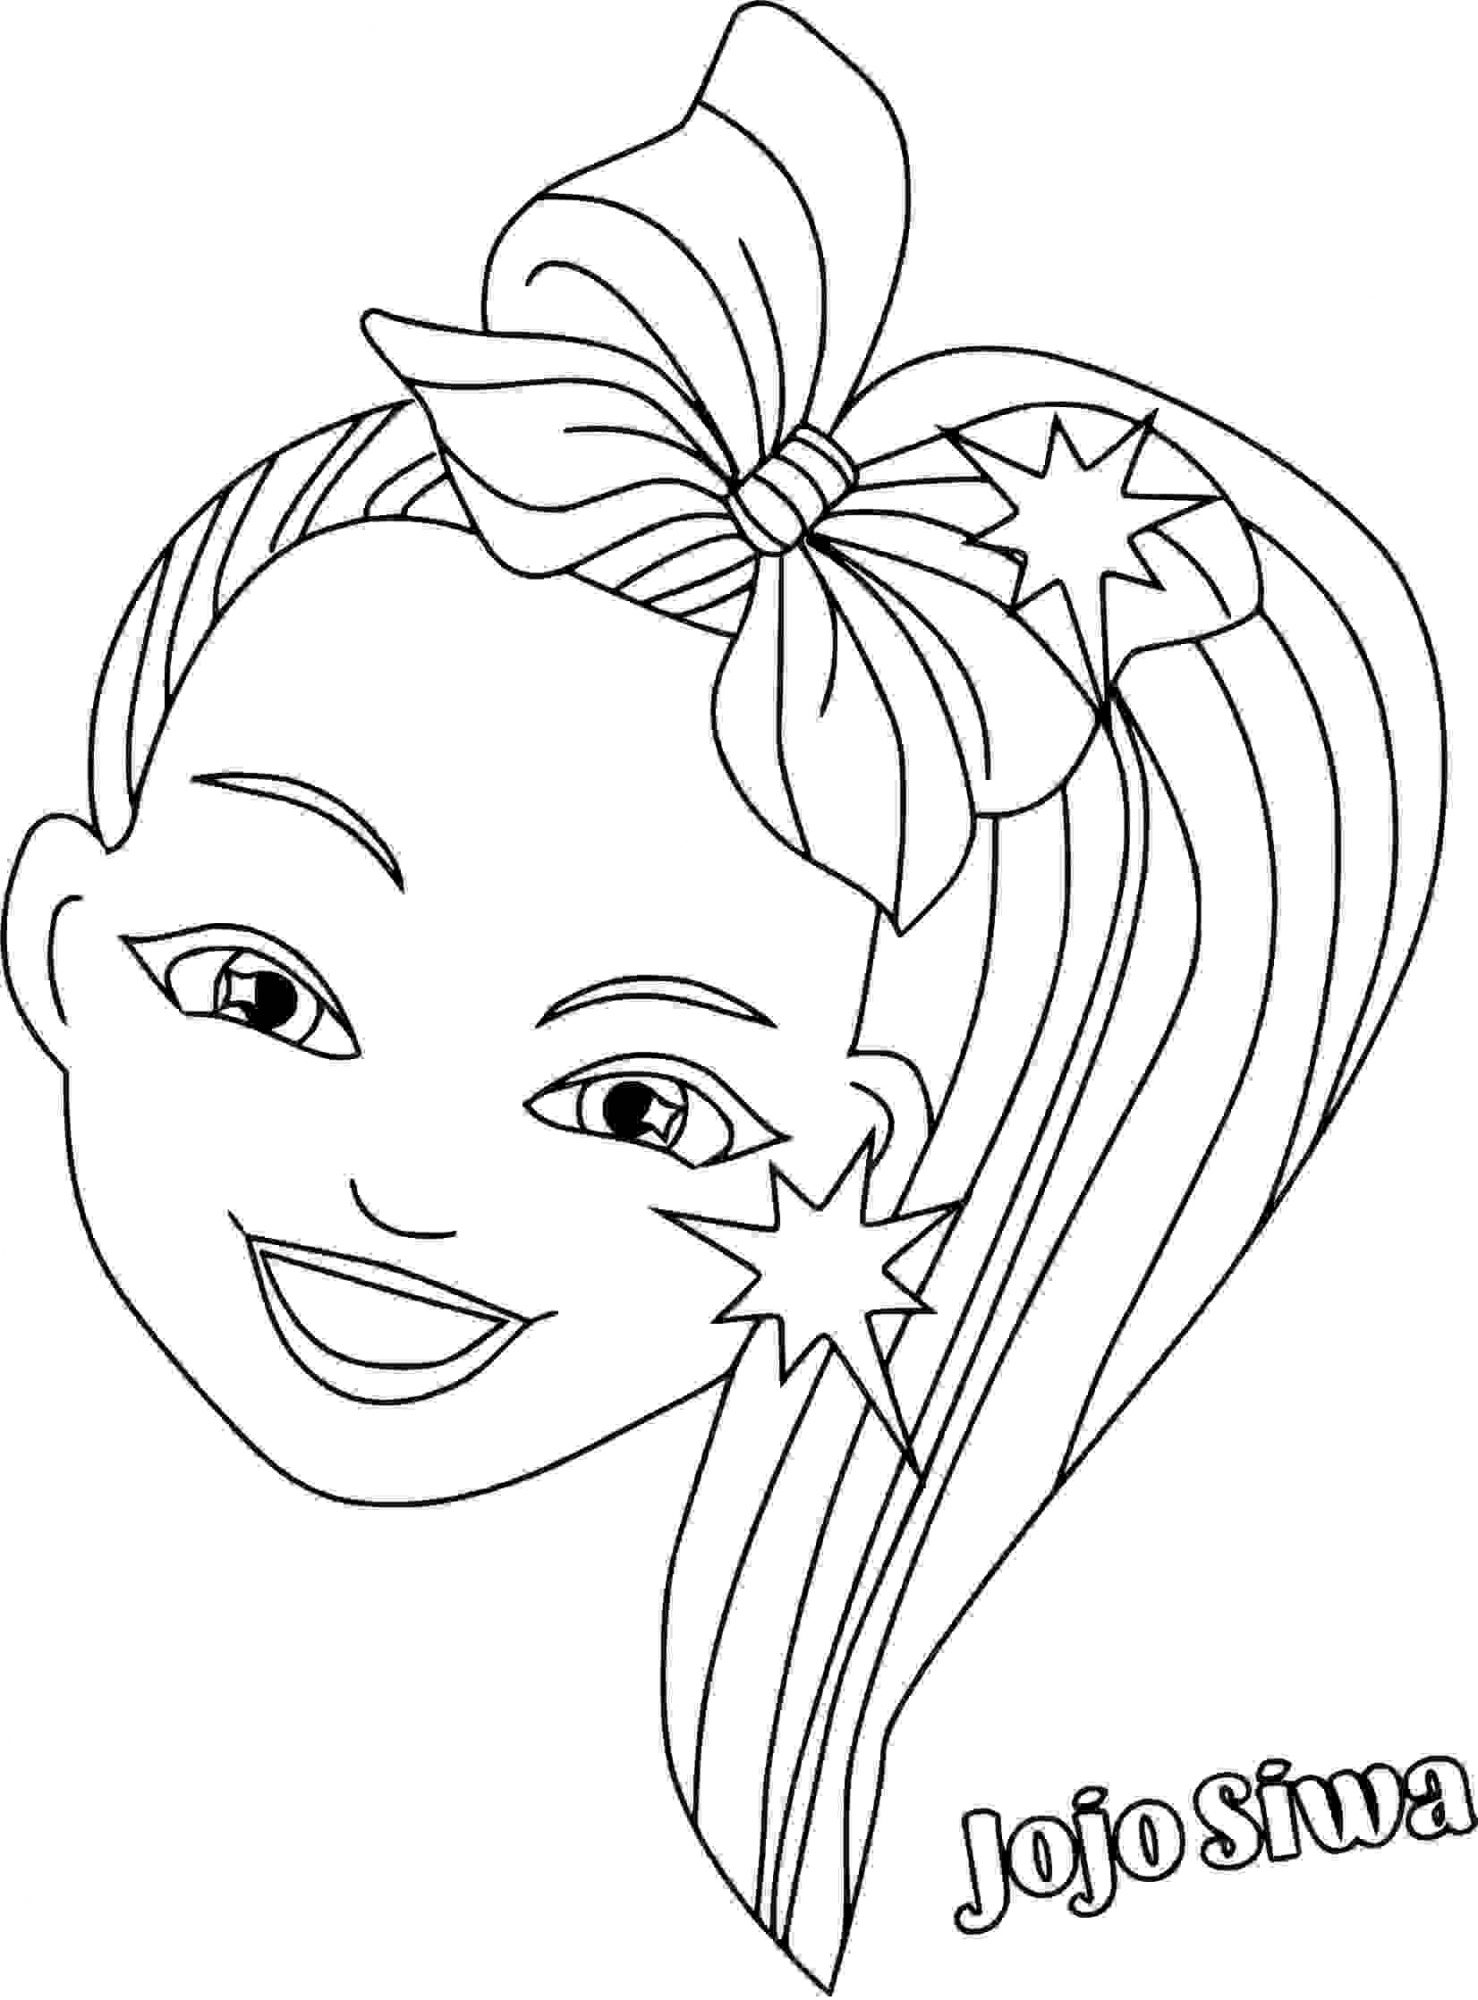 desenho de Cabeça de Jojo Siwa com cabelo colorido